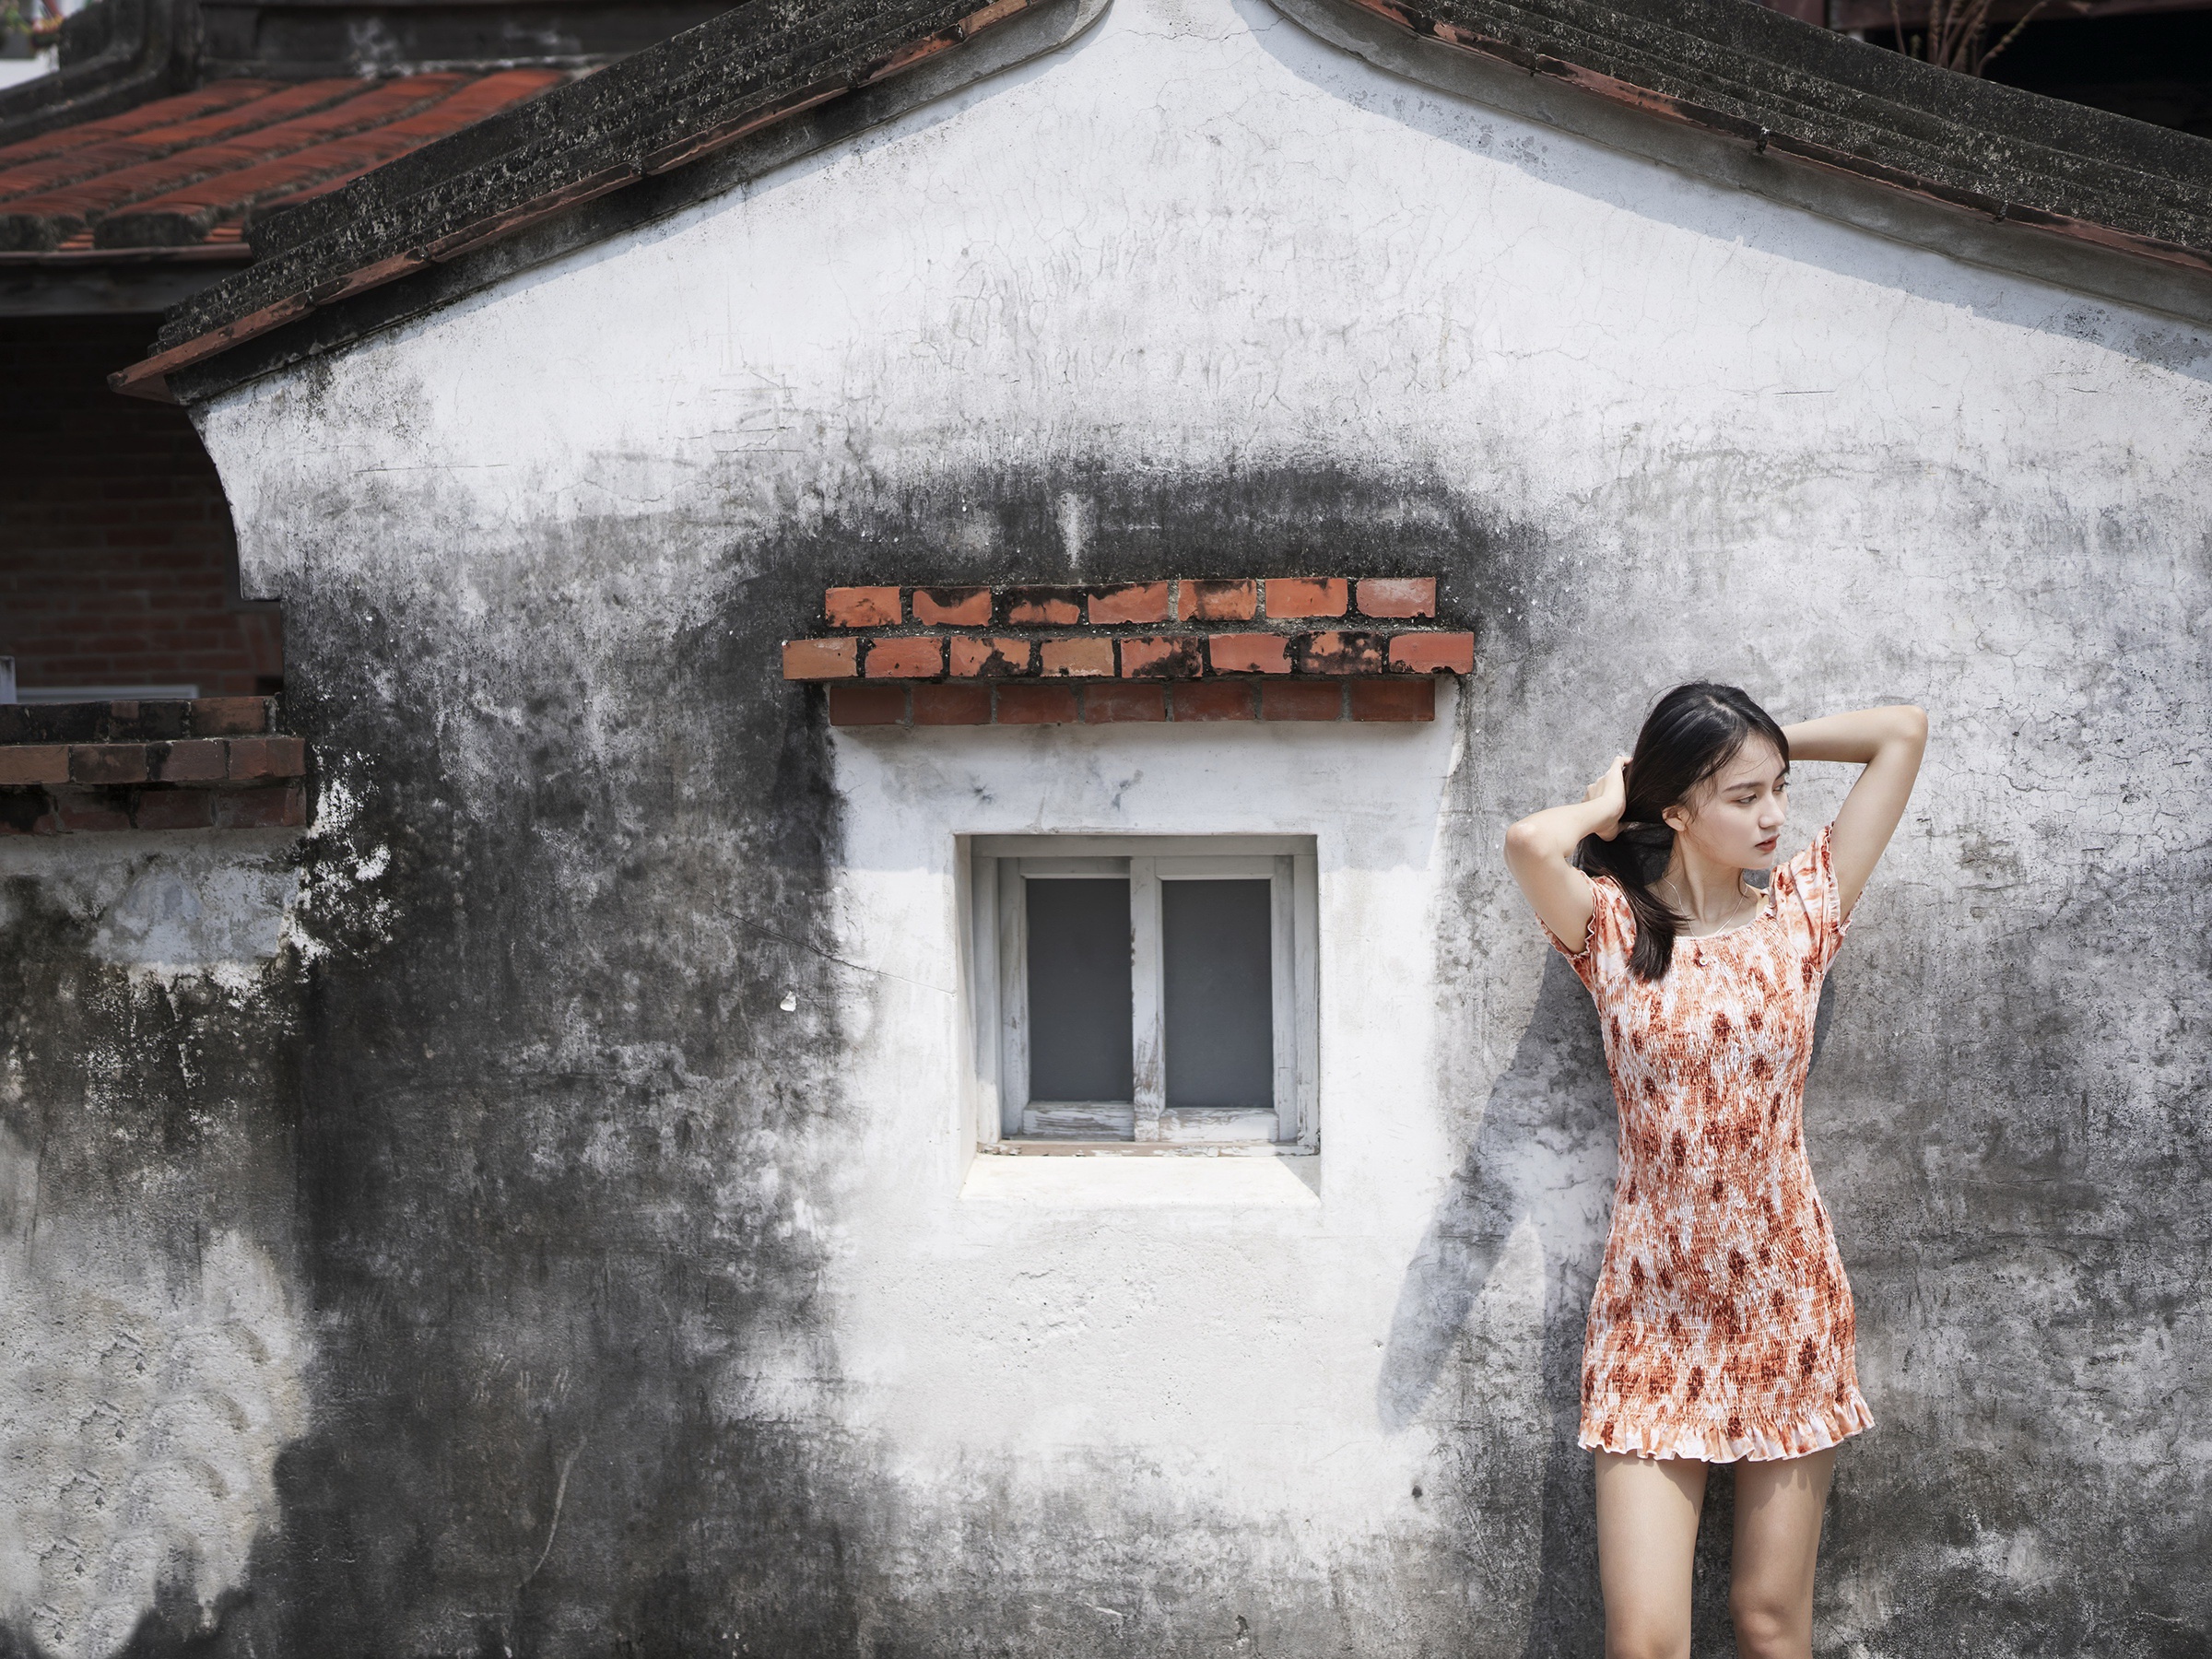 Asian Model Women House Wall Black Hair Standing Dress Summer Dress Arms Up Looking Away 2400x1800